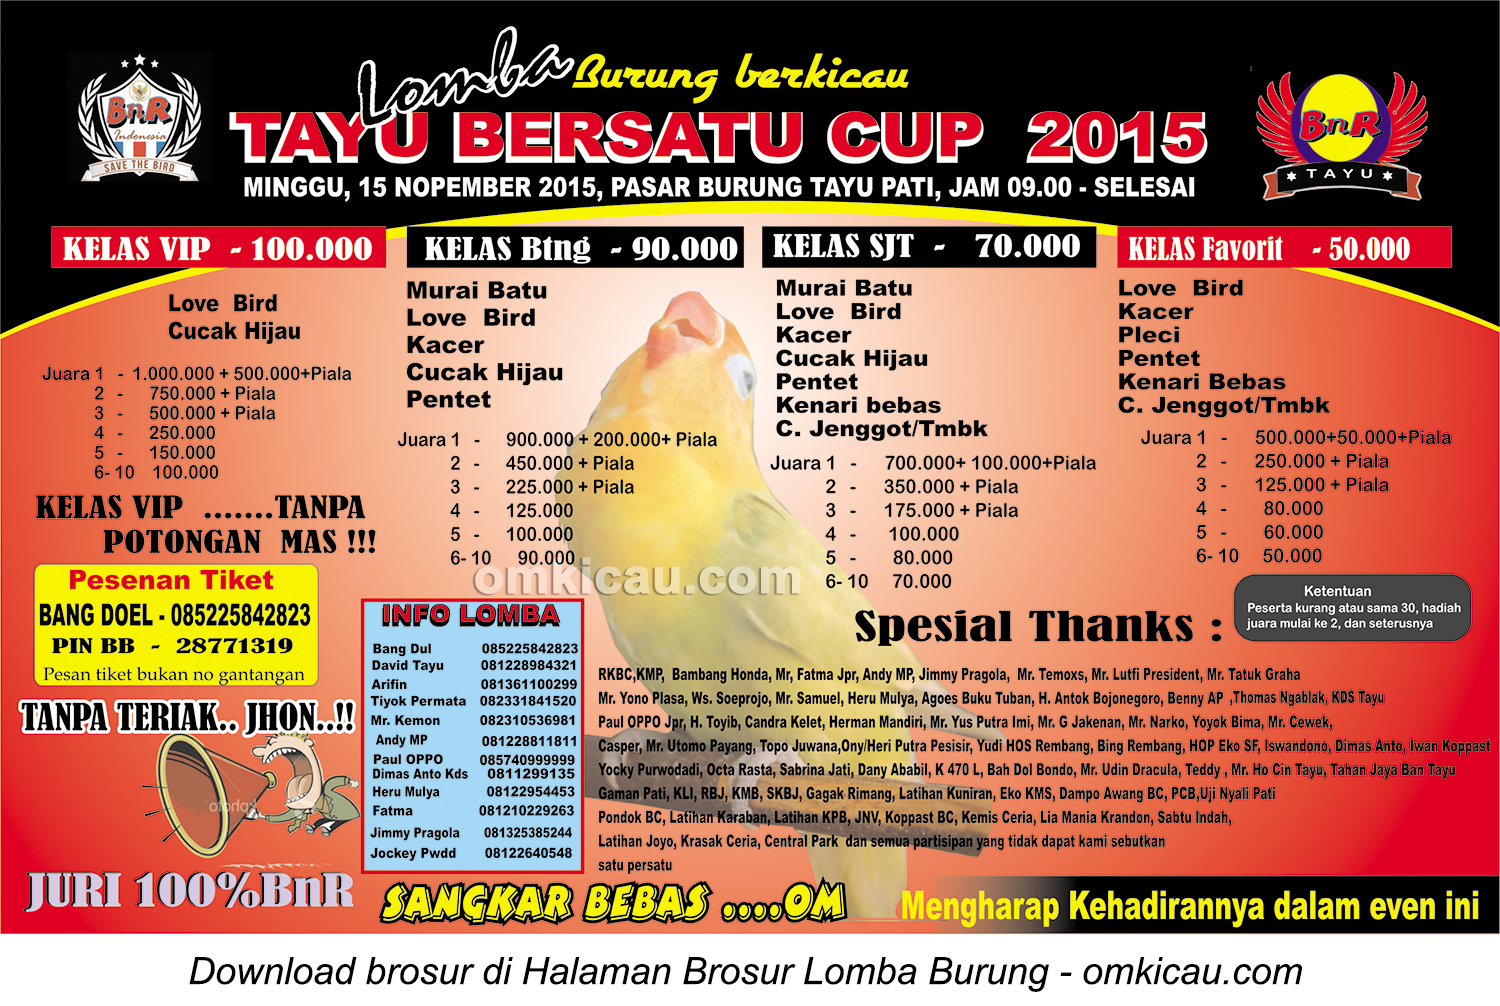 Brosur Lomba Burung Berkicau Tayu Bersatu Cup, Pati, 15 November 2015